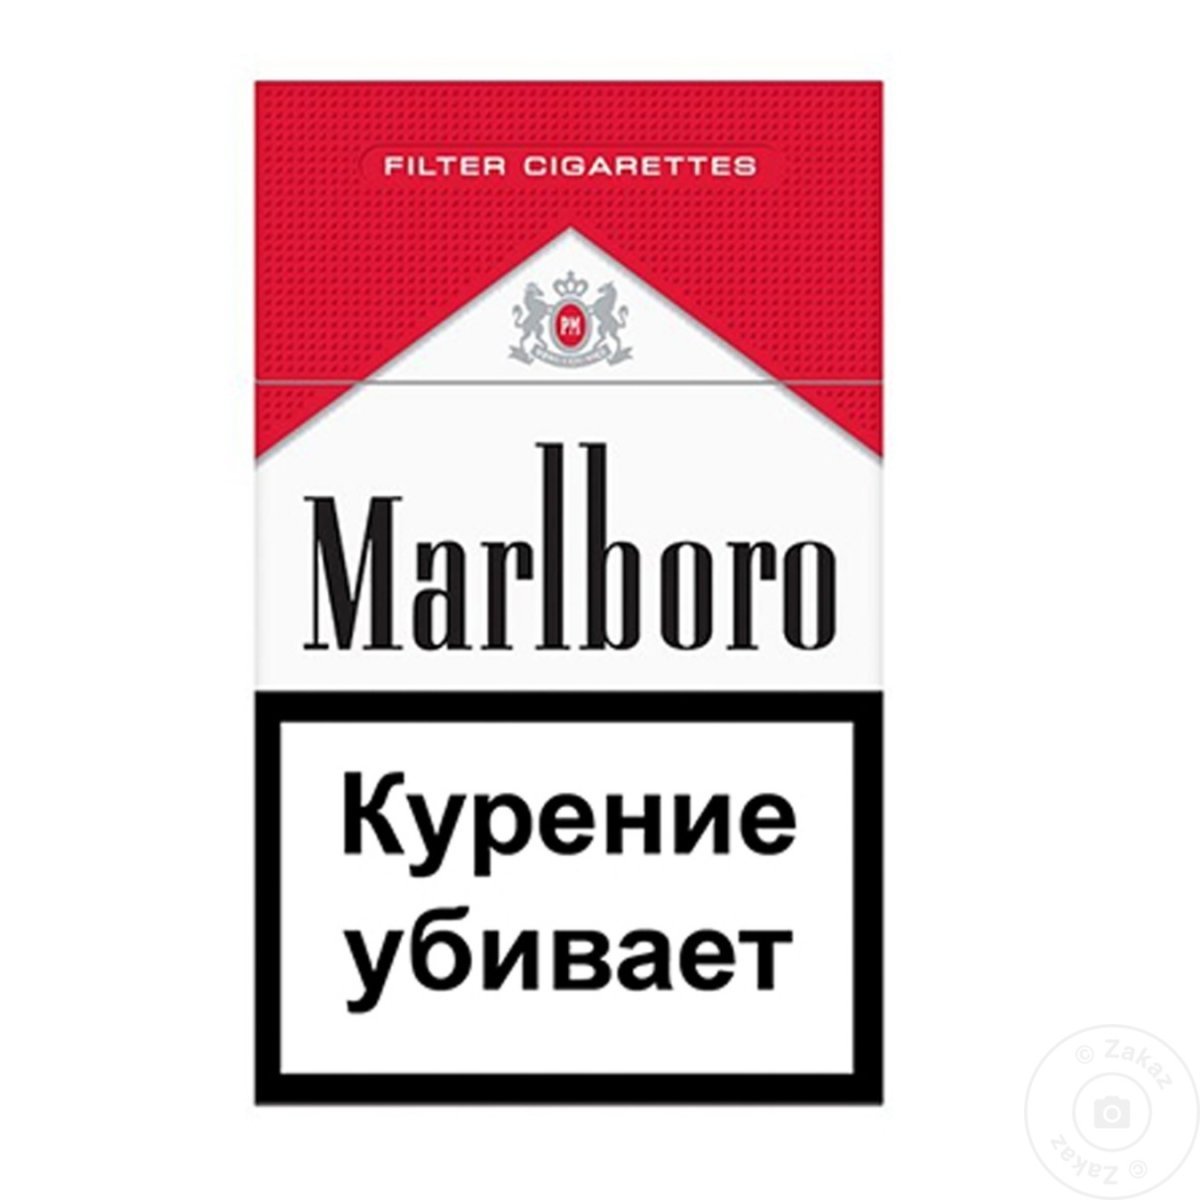 Мальборо пачка курение убивает